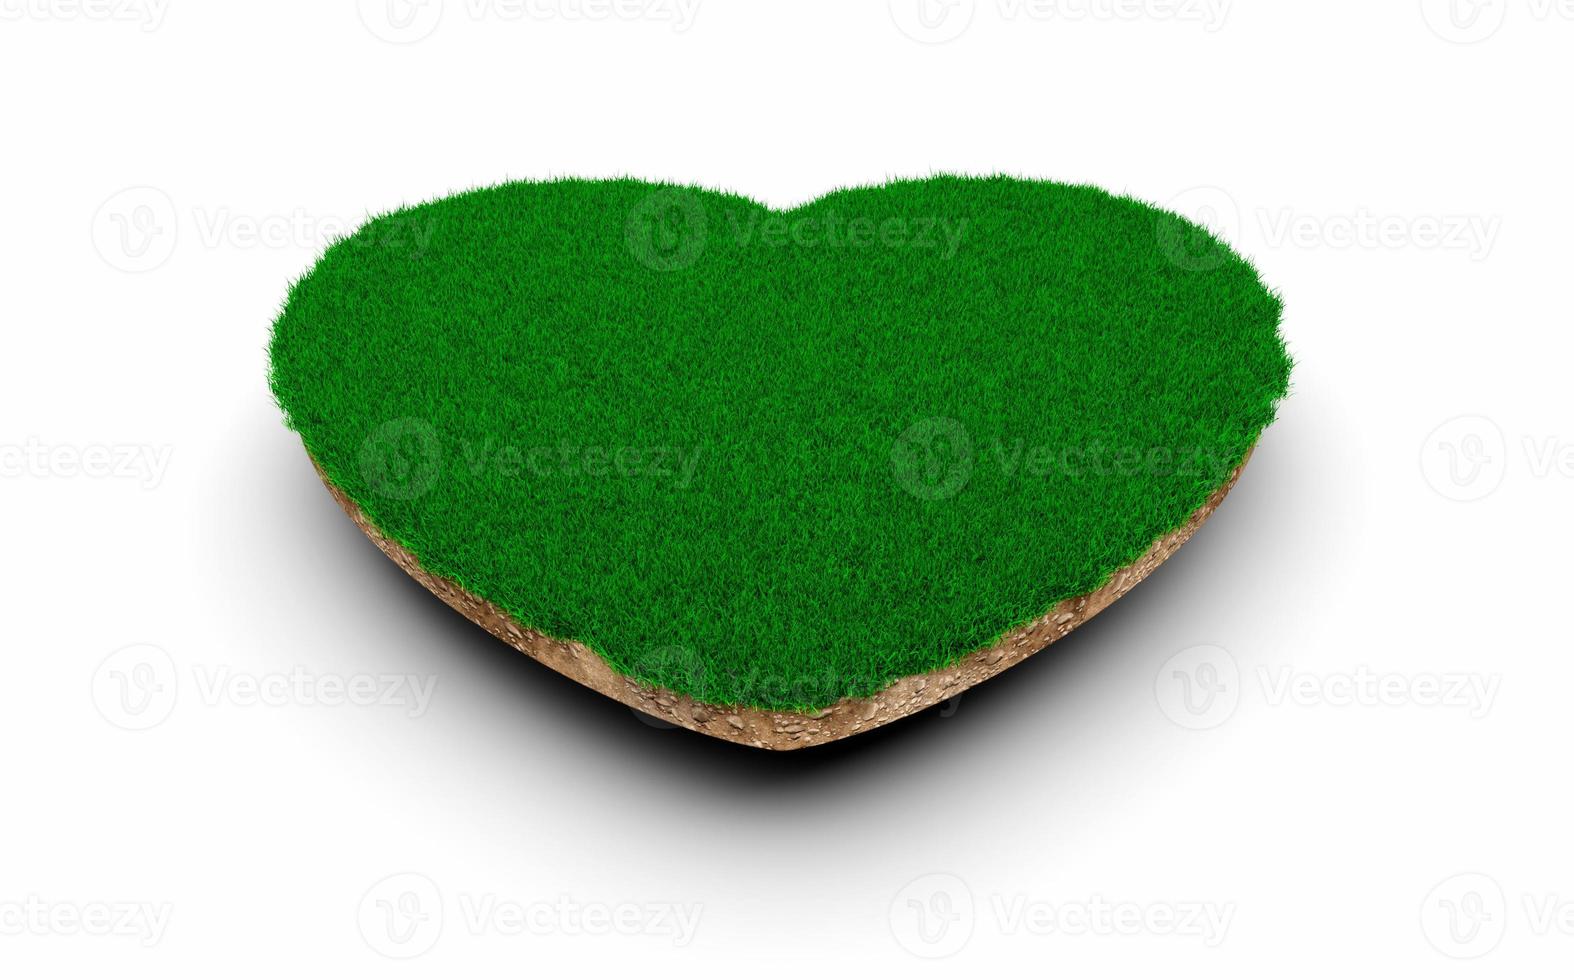 seção transversal da geologia da terra do solo da forma do coração com grama verde, lama da terra cortada ilustração 3d isolada foto